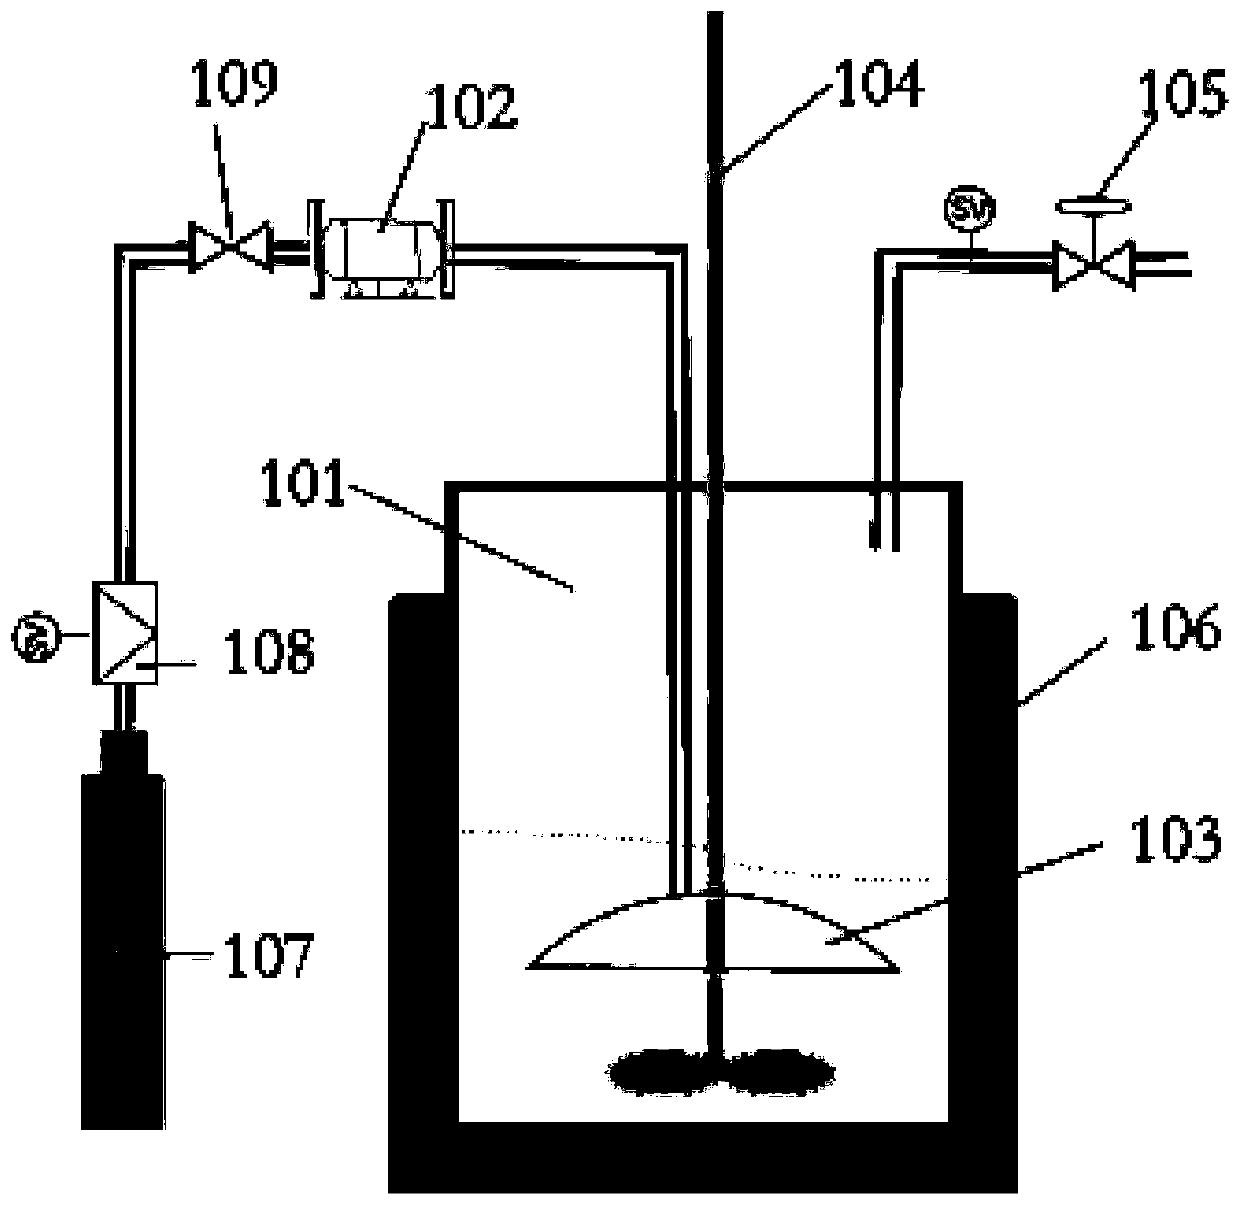 Method for preparing isononanoic acid from mixed isooctene